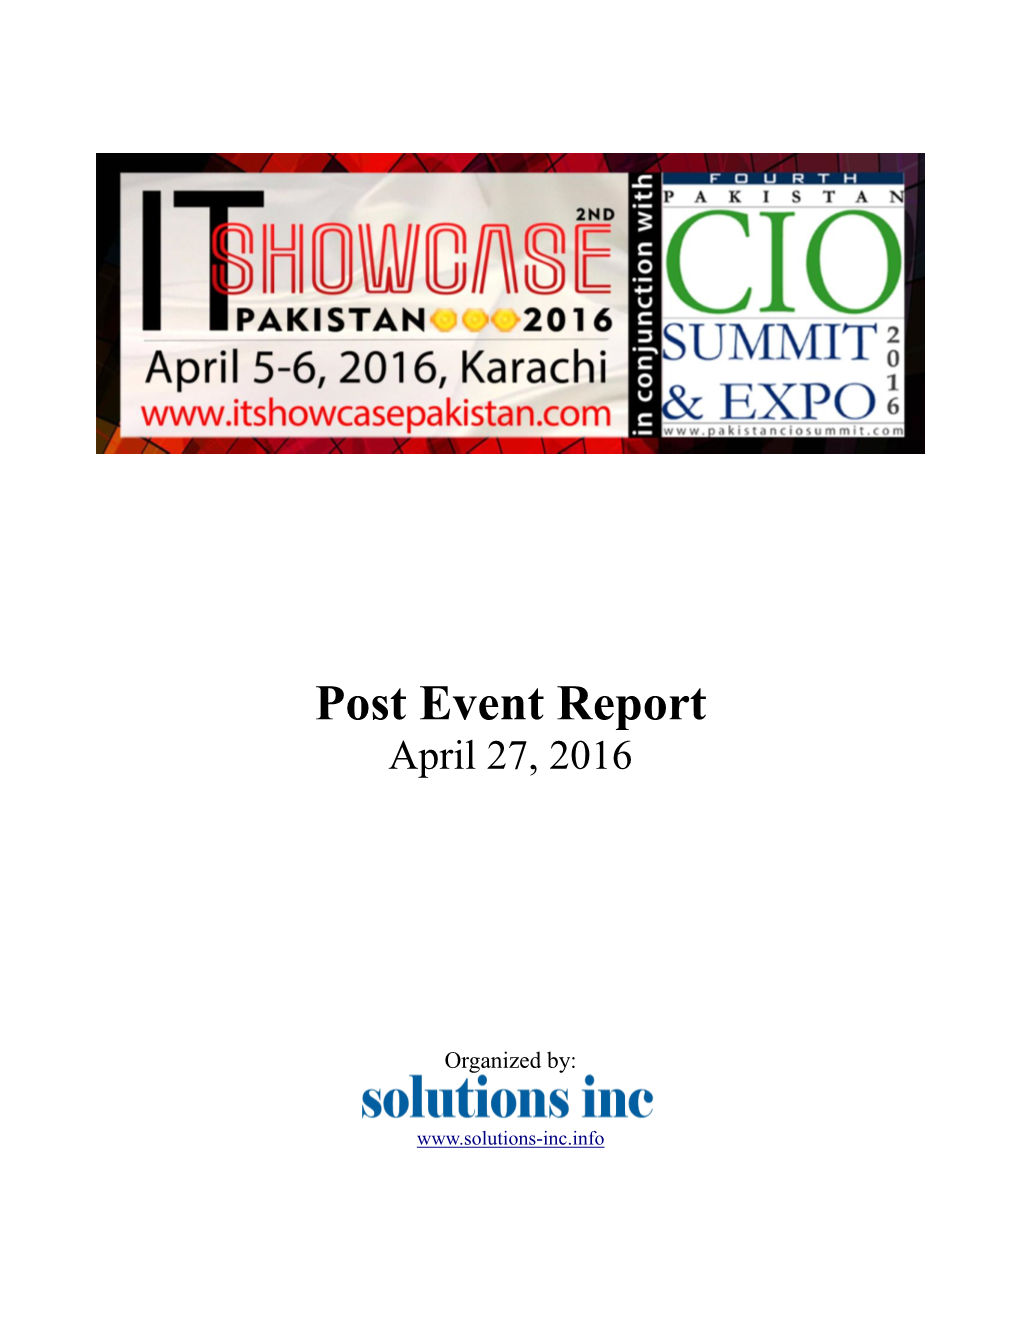 Post Event Report April 27, 2016